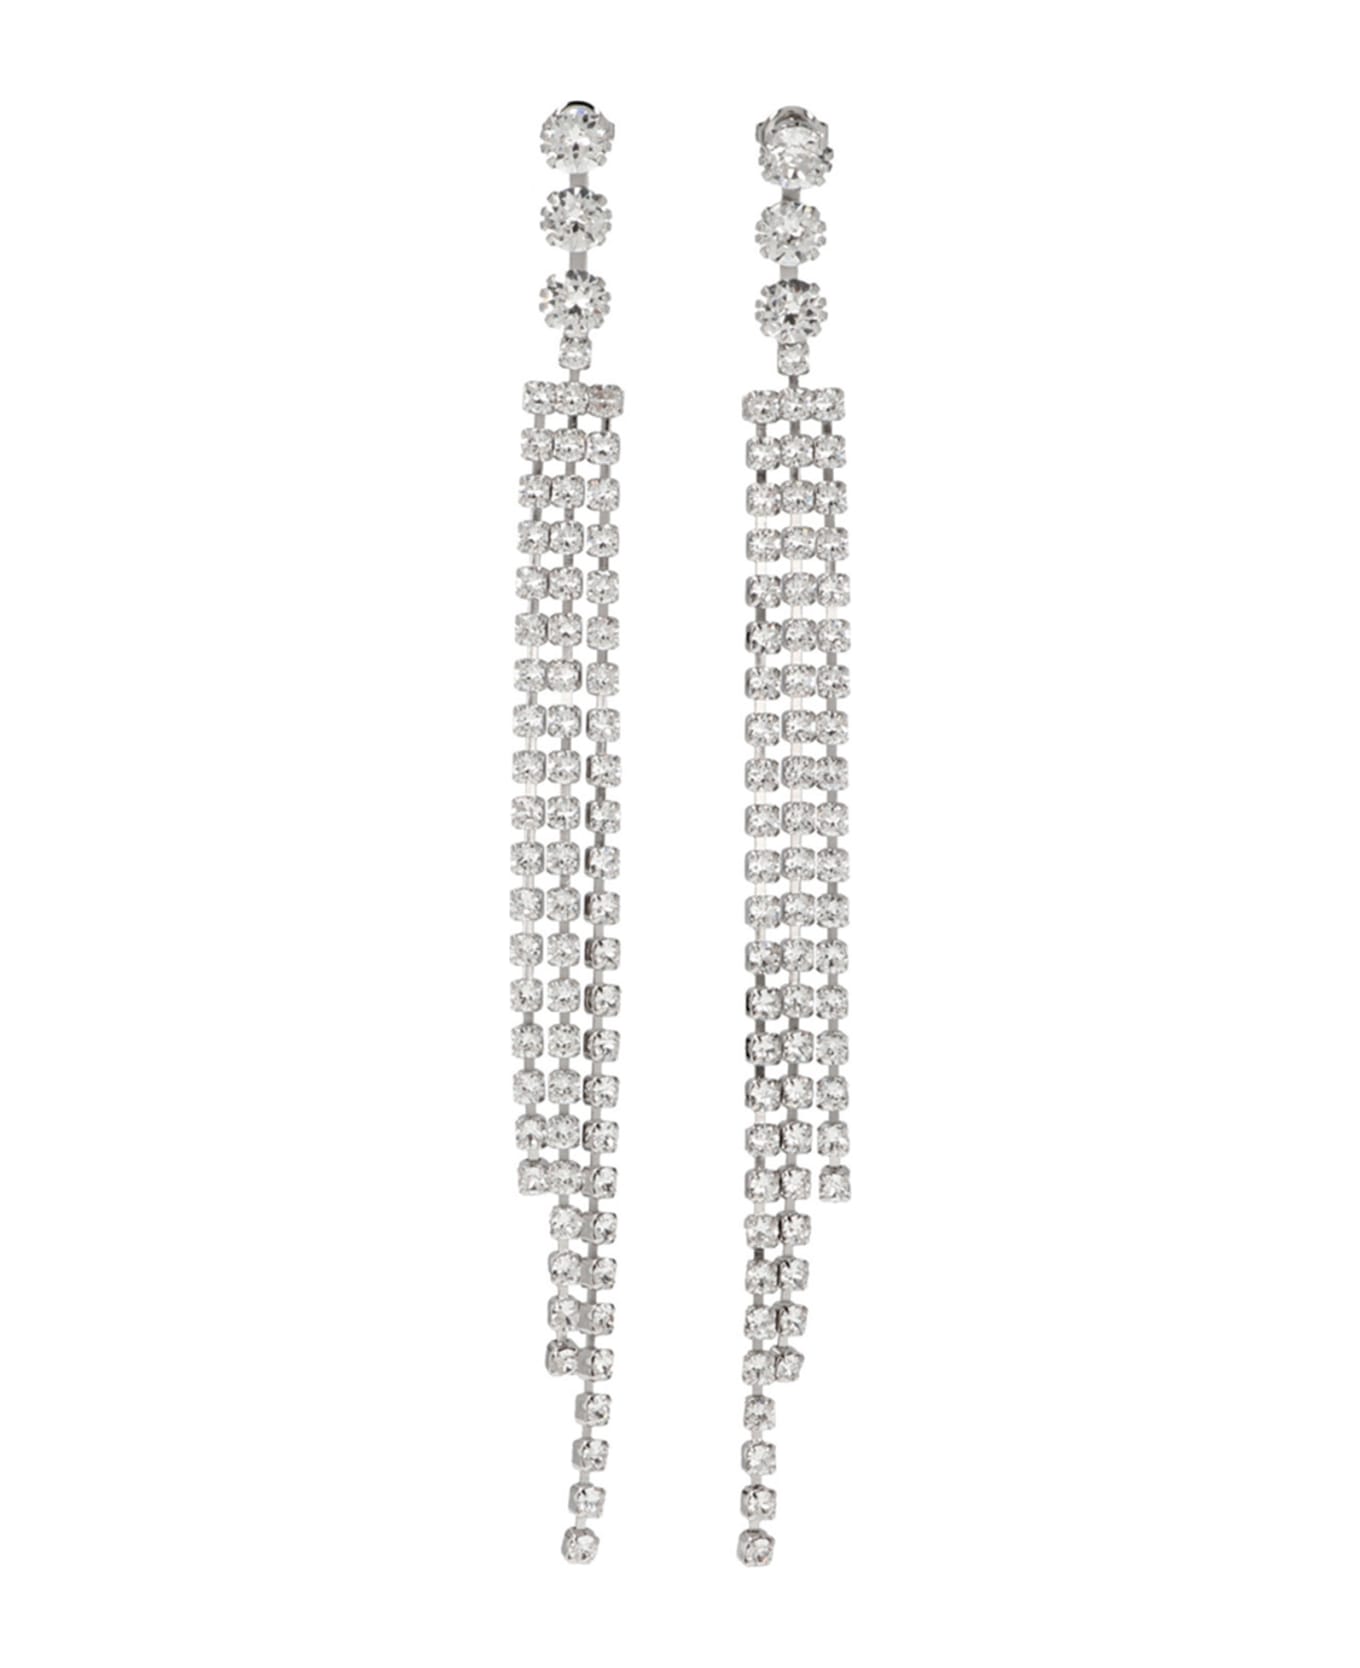 Isabel Marant Fringe Crystal Earrings - TRANSPARENT SILVER